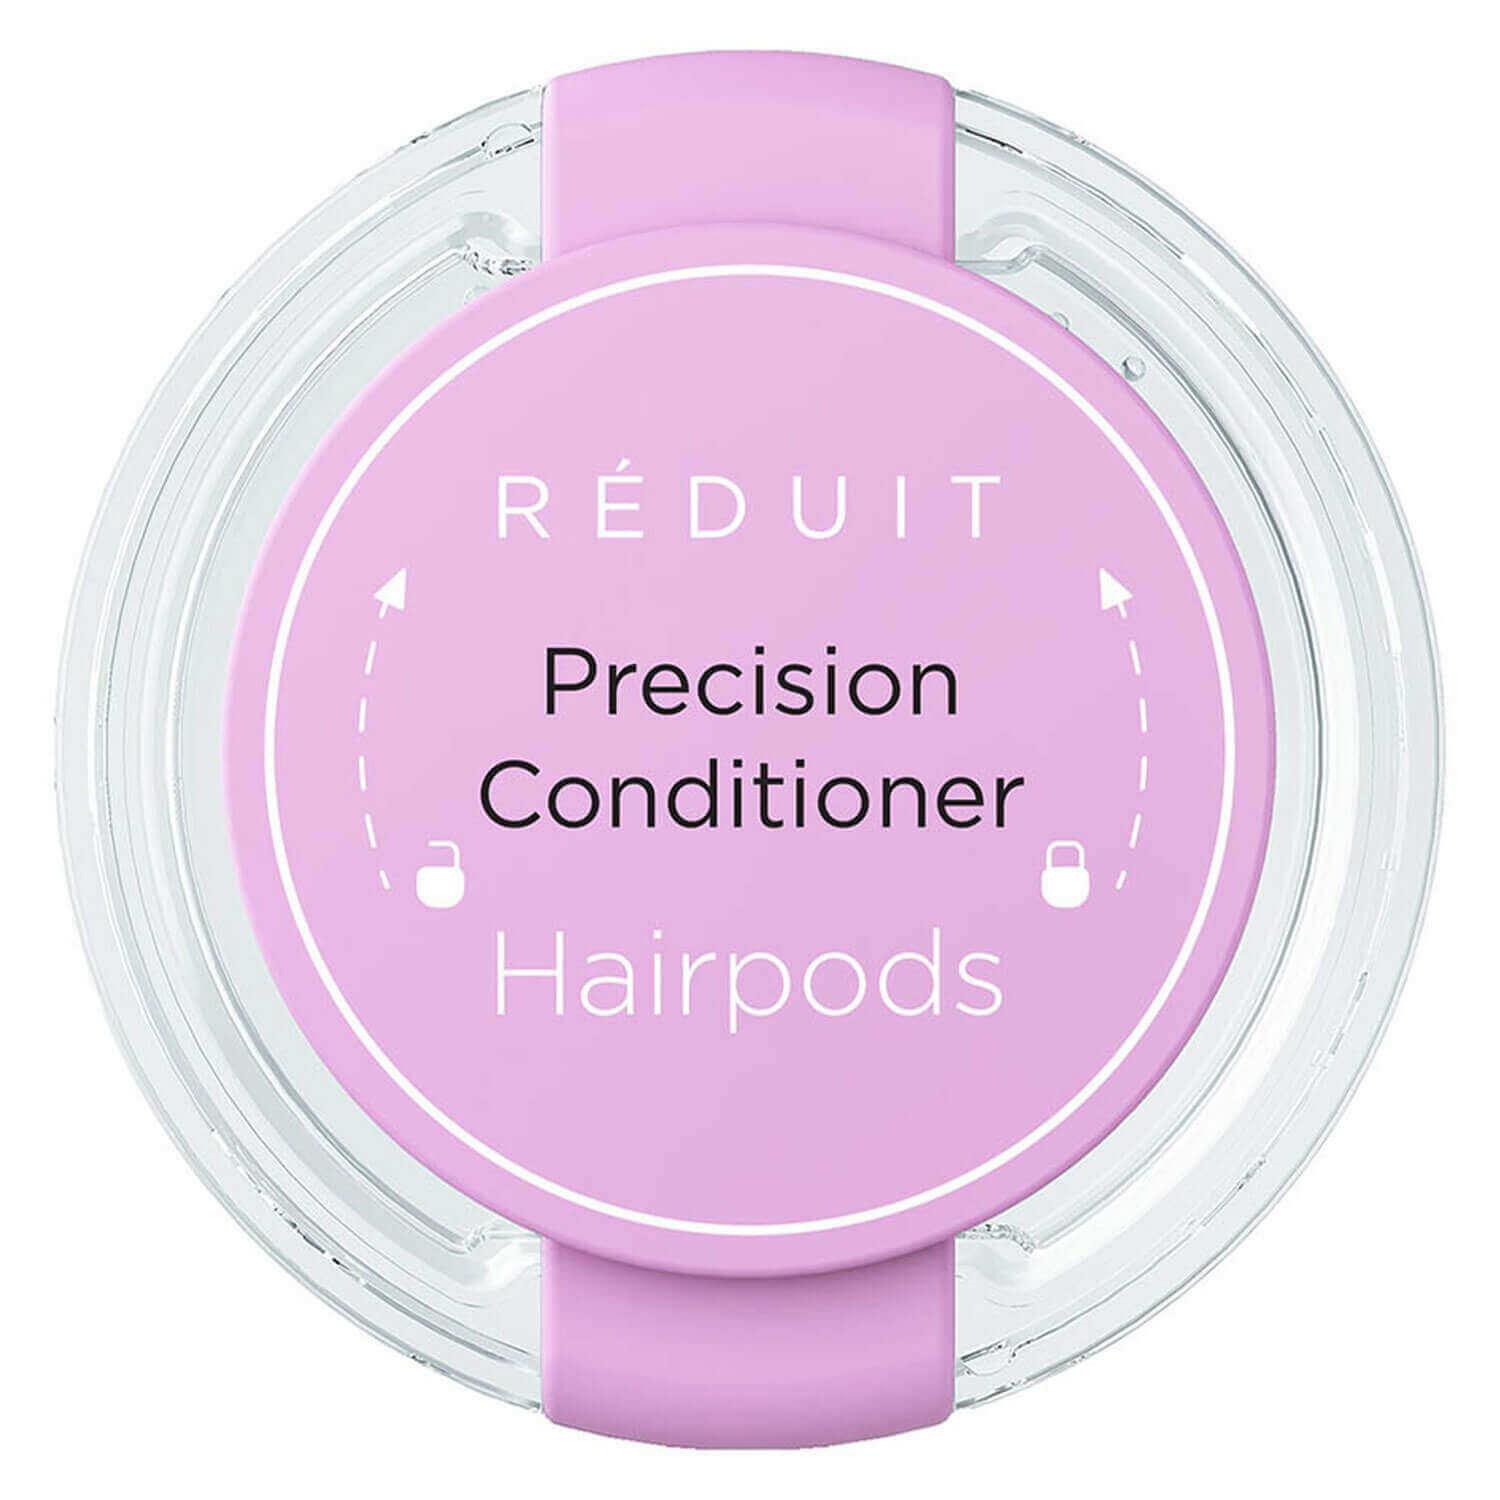 RÉDUIT - Precision Conditioner Hairpods